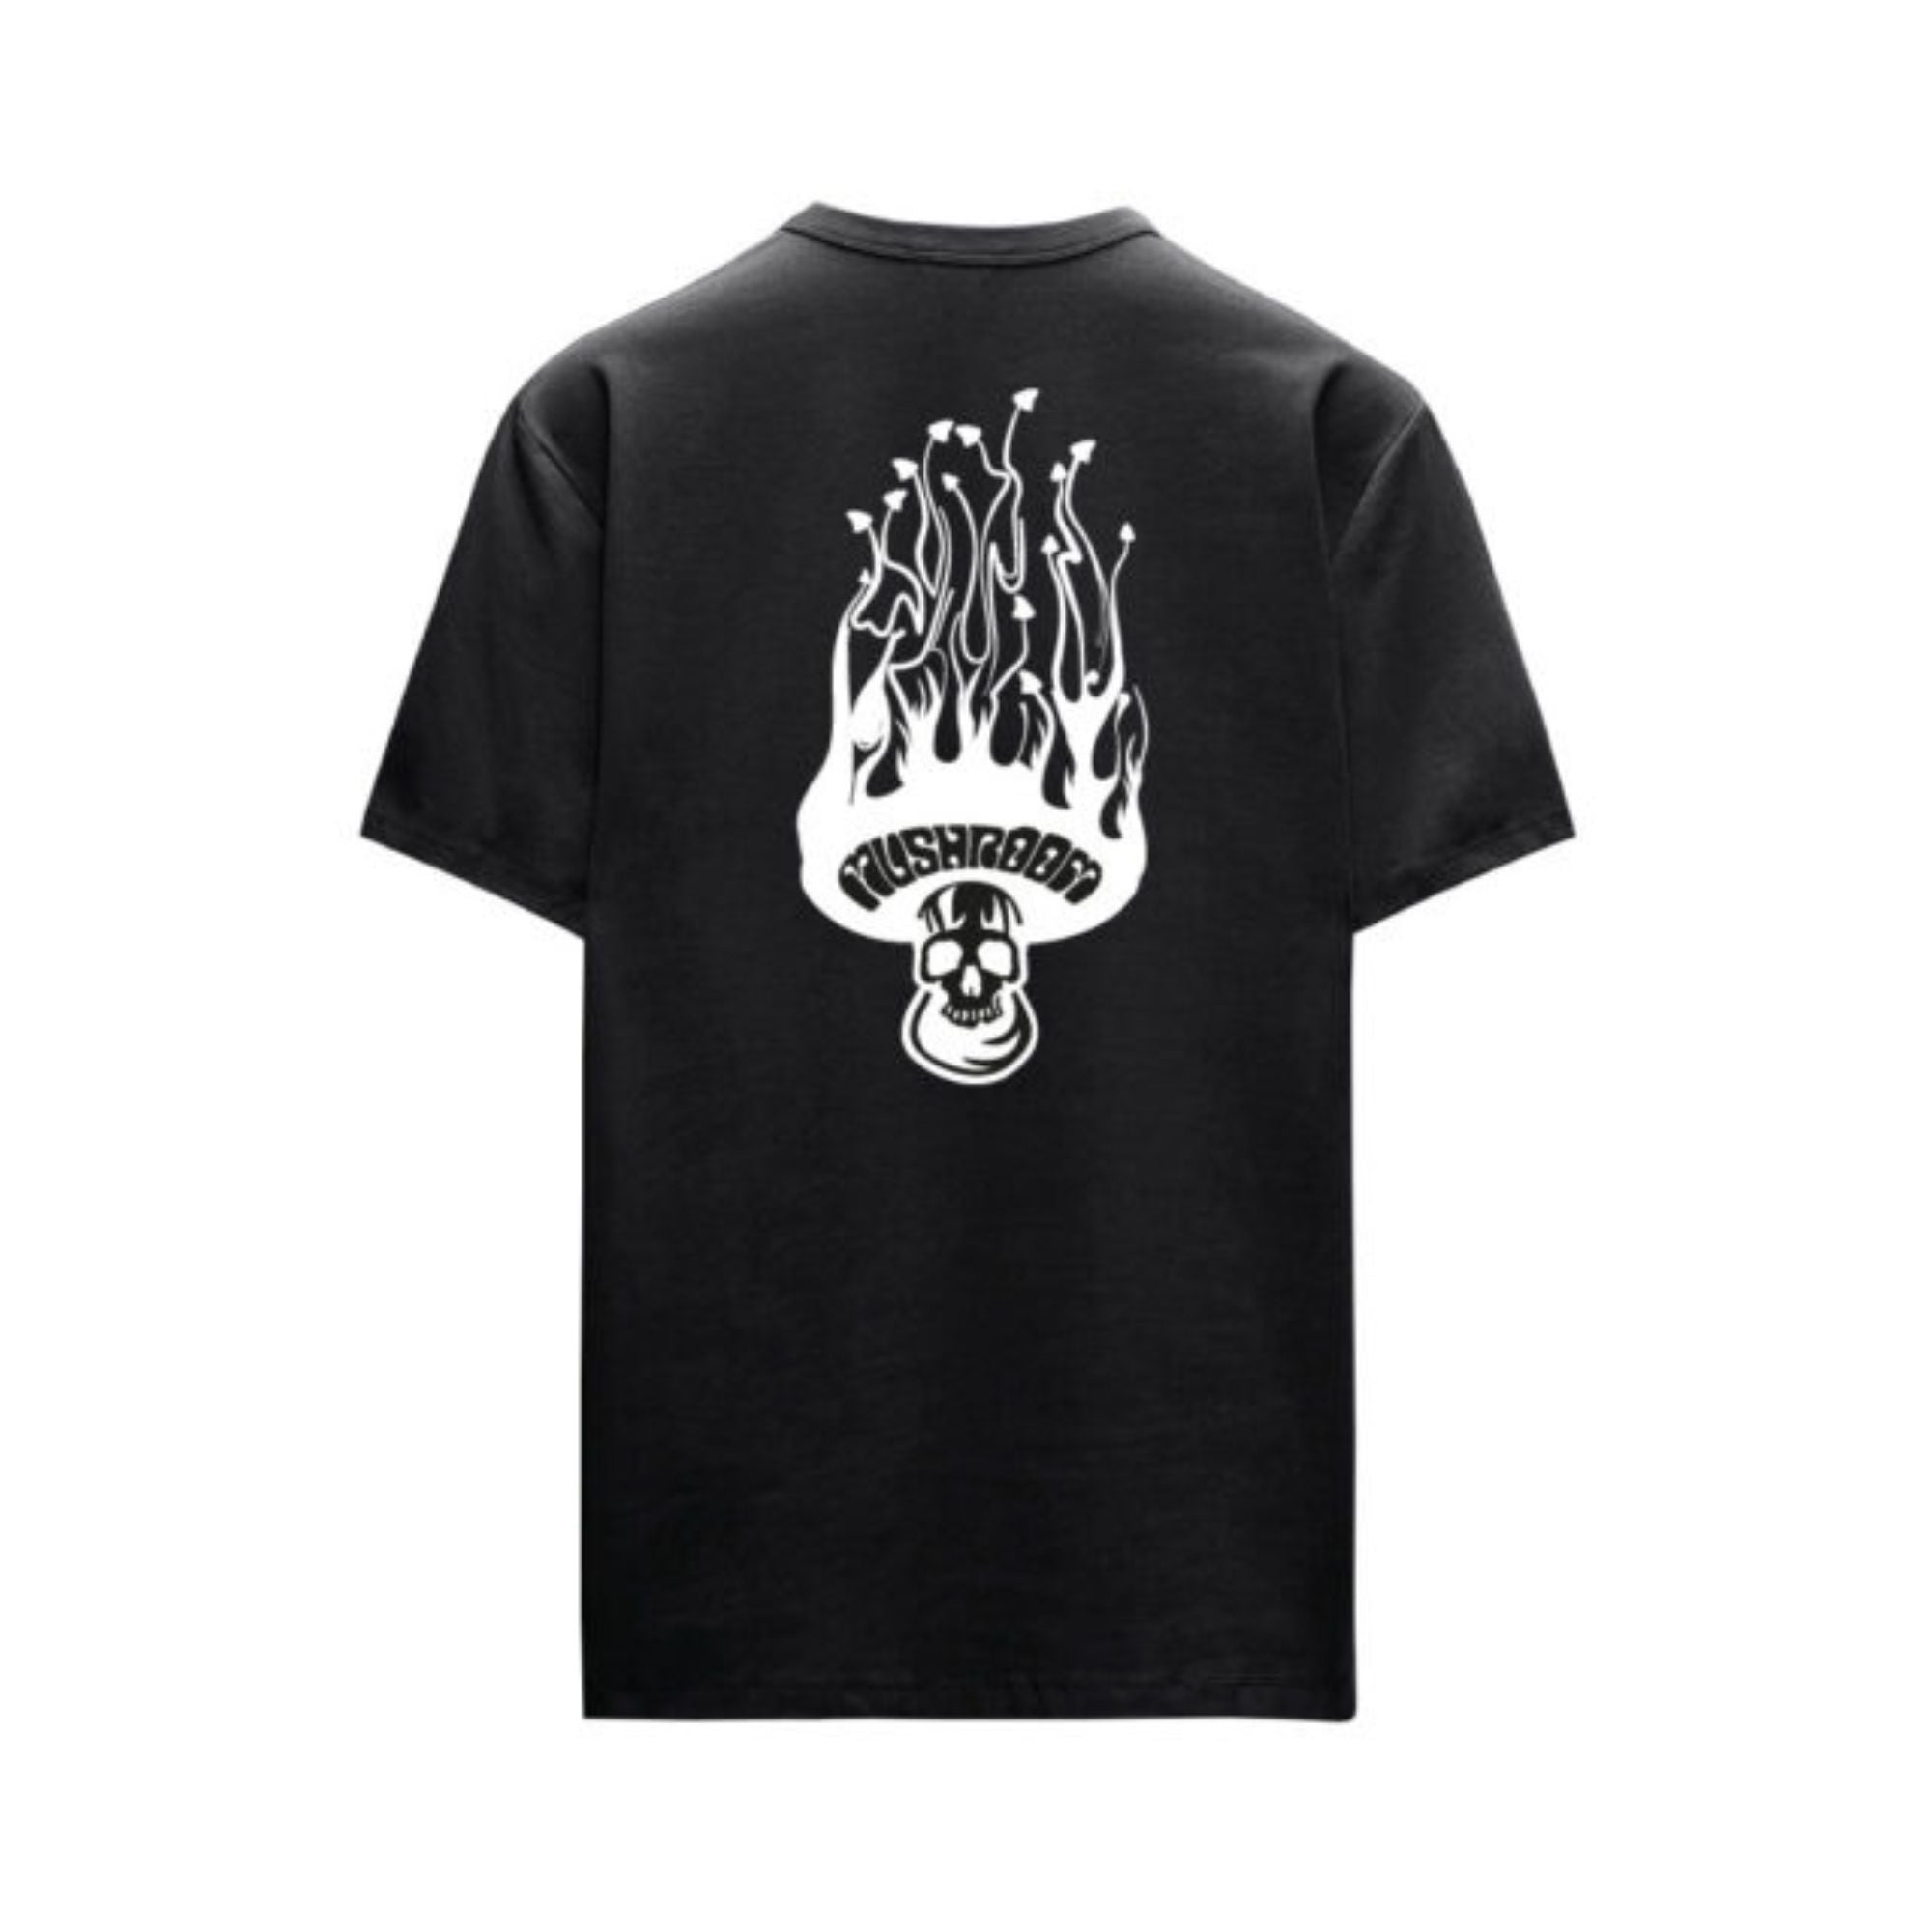 T-shirt in cotone con logo in fiamme sul petto e sul retro